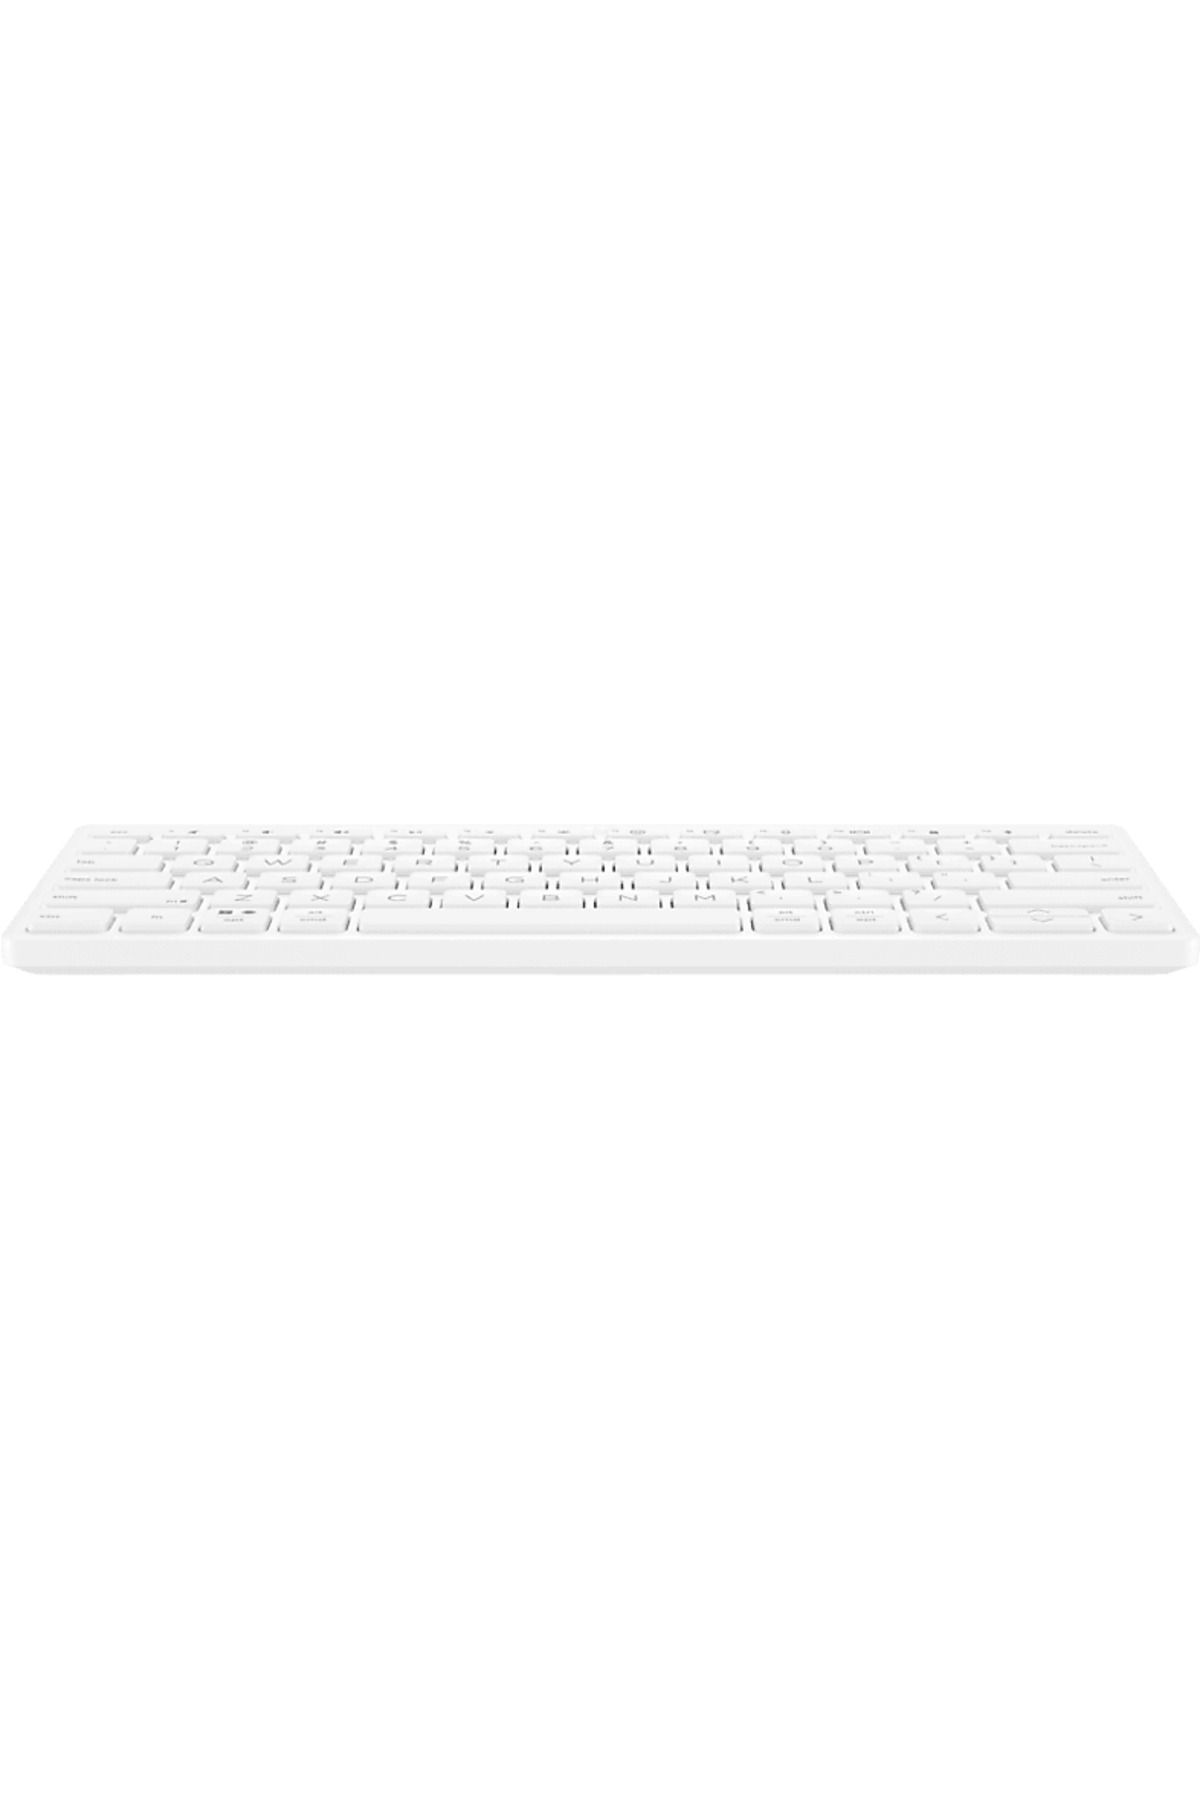 HP 350 Bluetooth Klavye TR (692T0AA) Beyaz